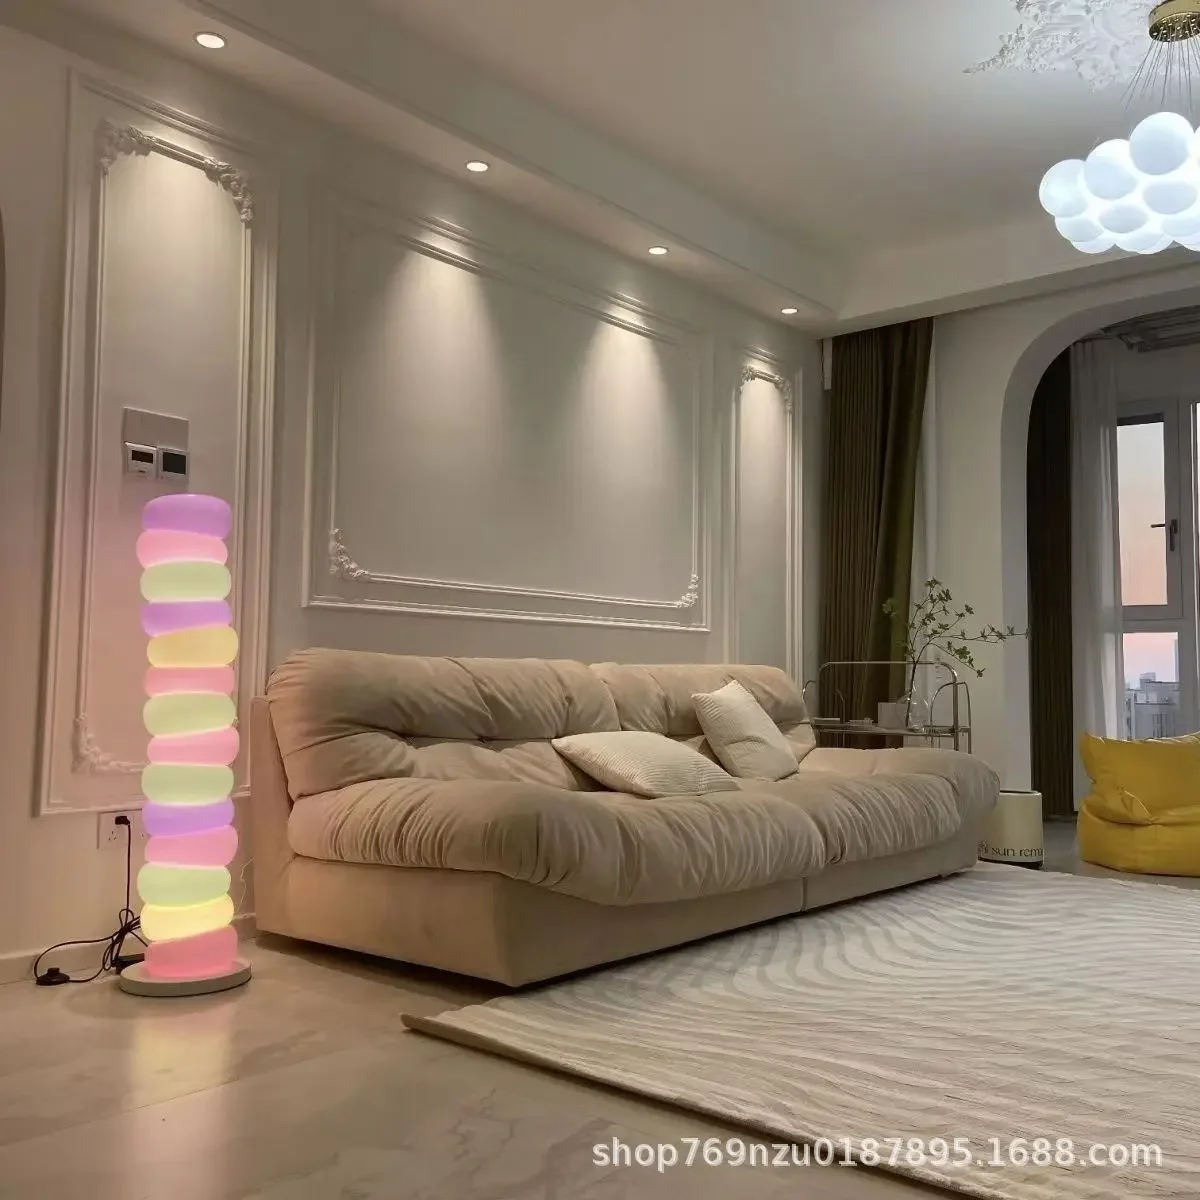 Сахарный торшер в стиле ворса, гостиная, спальня, чувство дизайна, Современные простые украшения, декоративная лампа, конфетный детский светильник Изображение 1